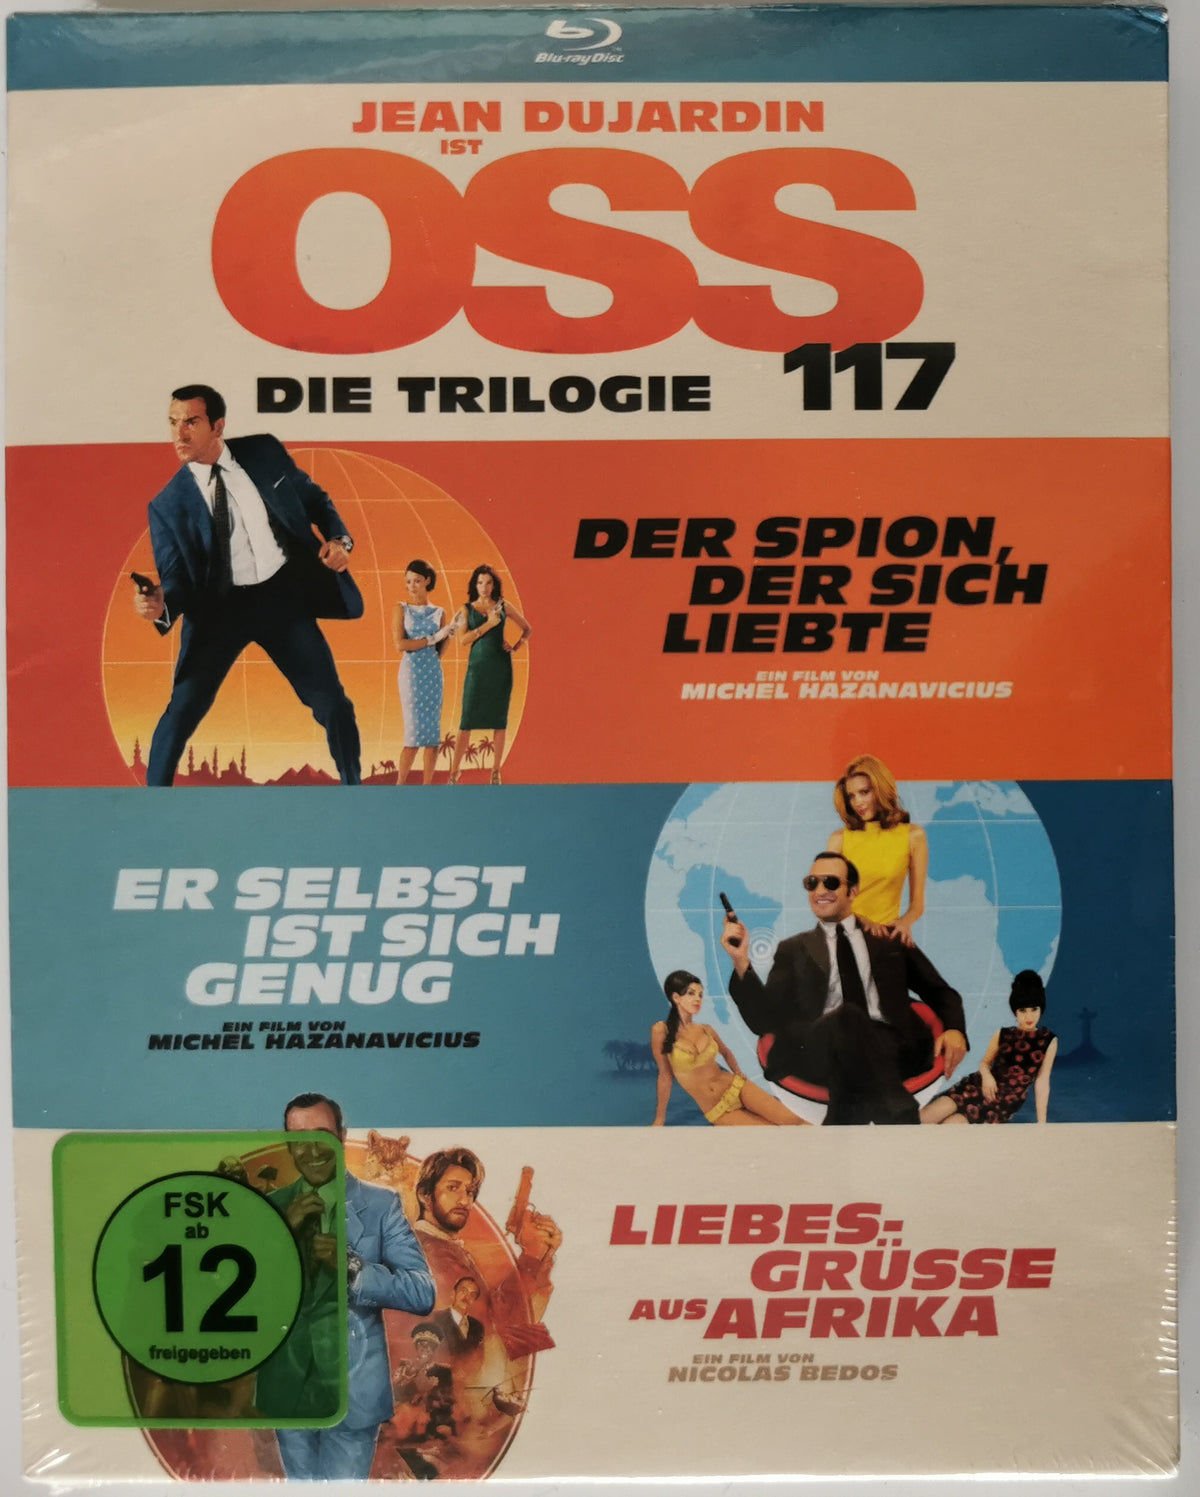 OSS 117 Die Trilogie Bluray (Blu-ray) [Neu]